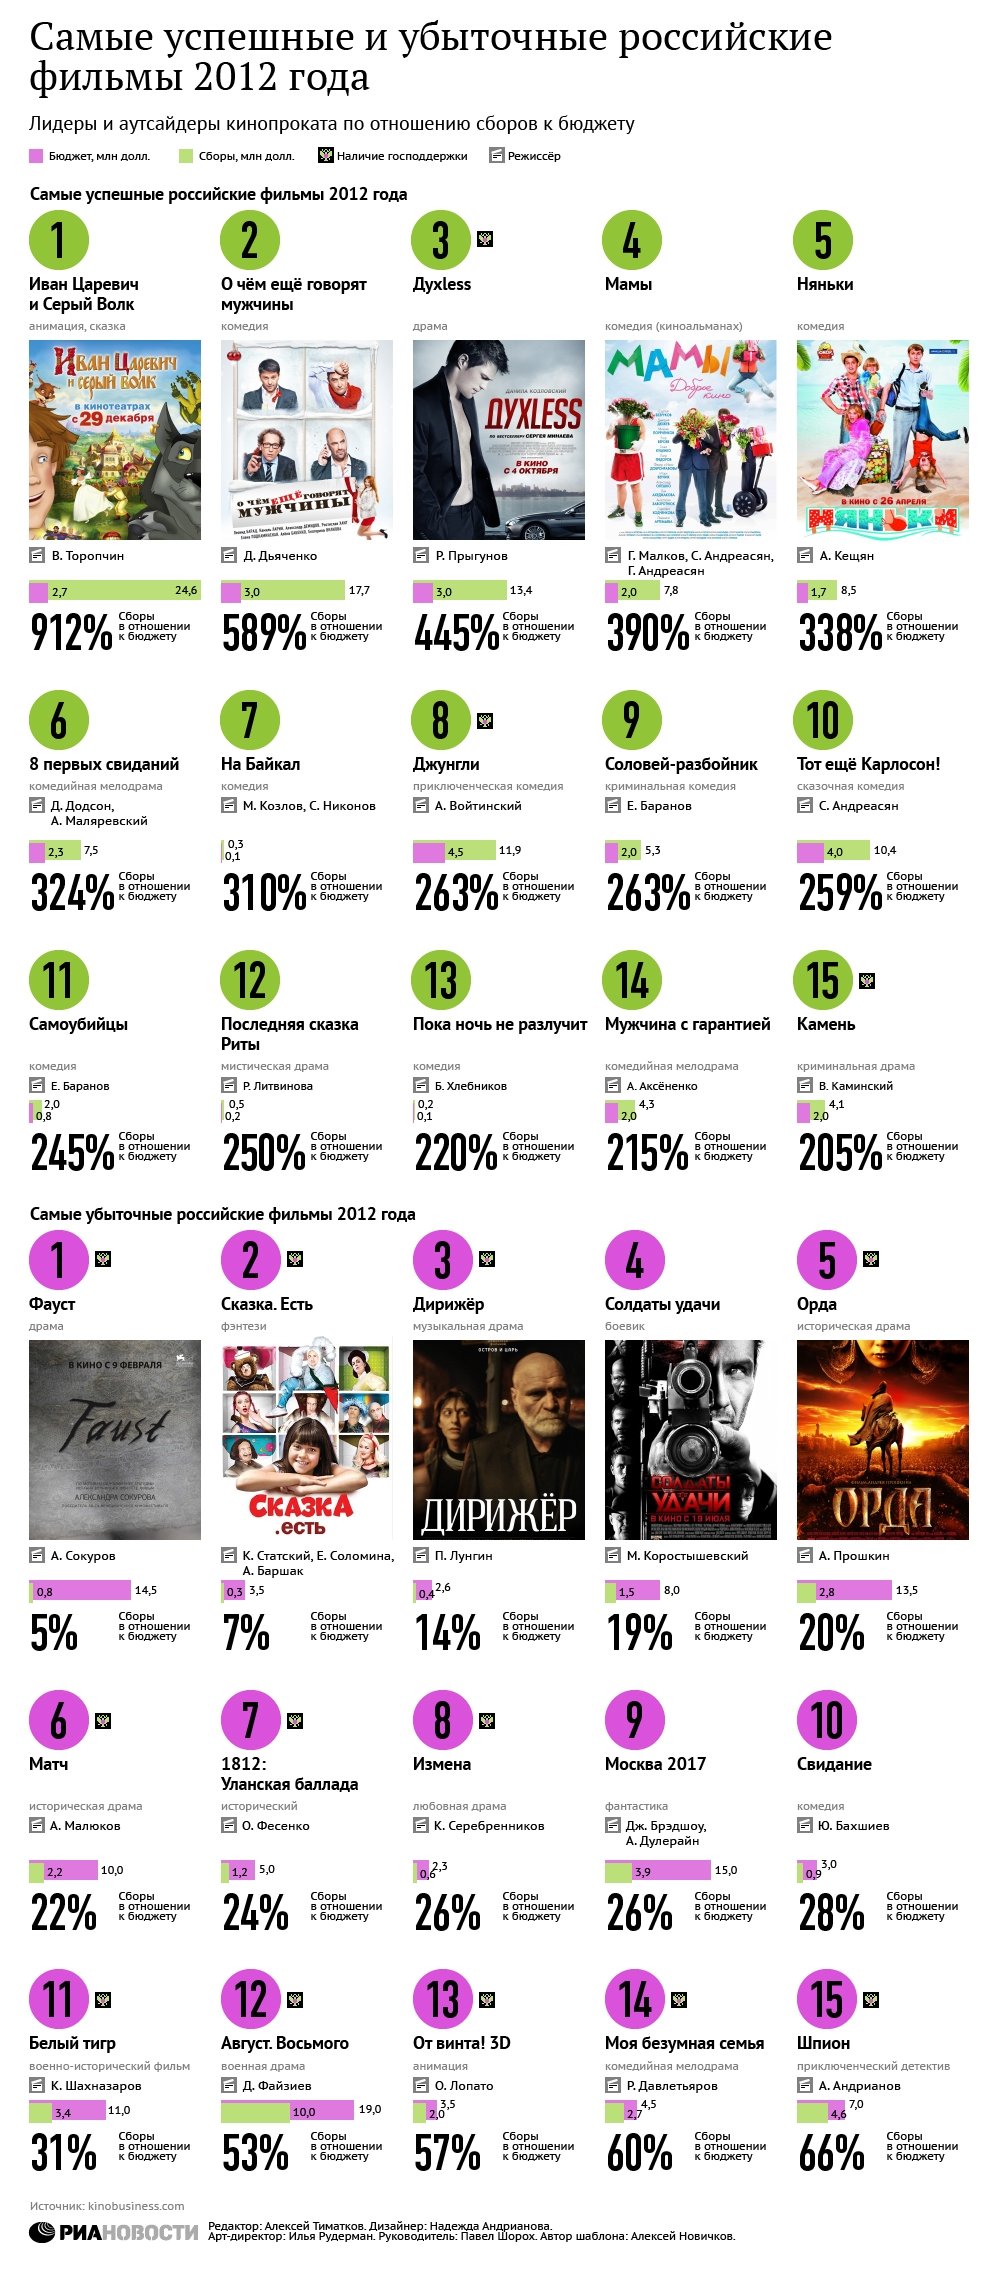 Самые успешные и убыточные фильмы 2012 года